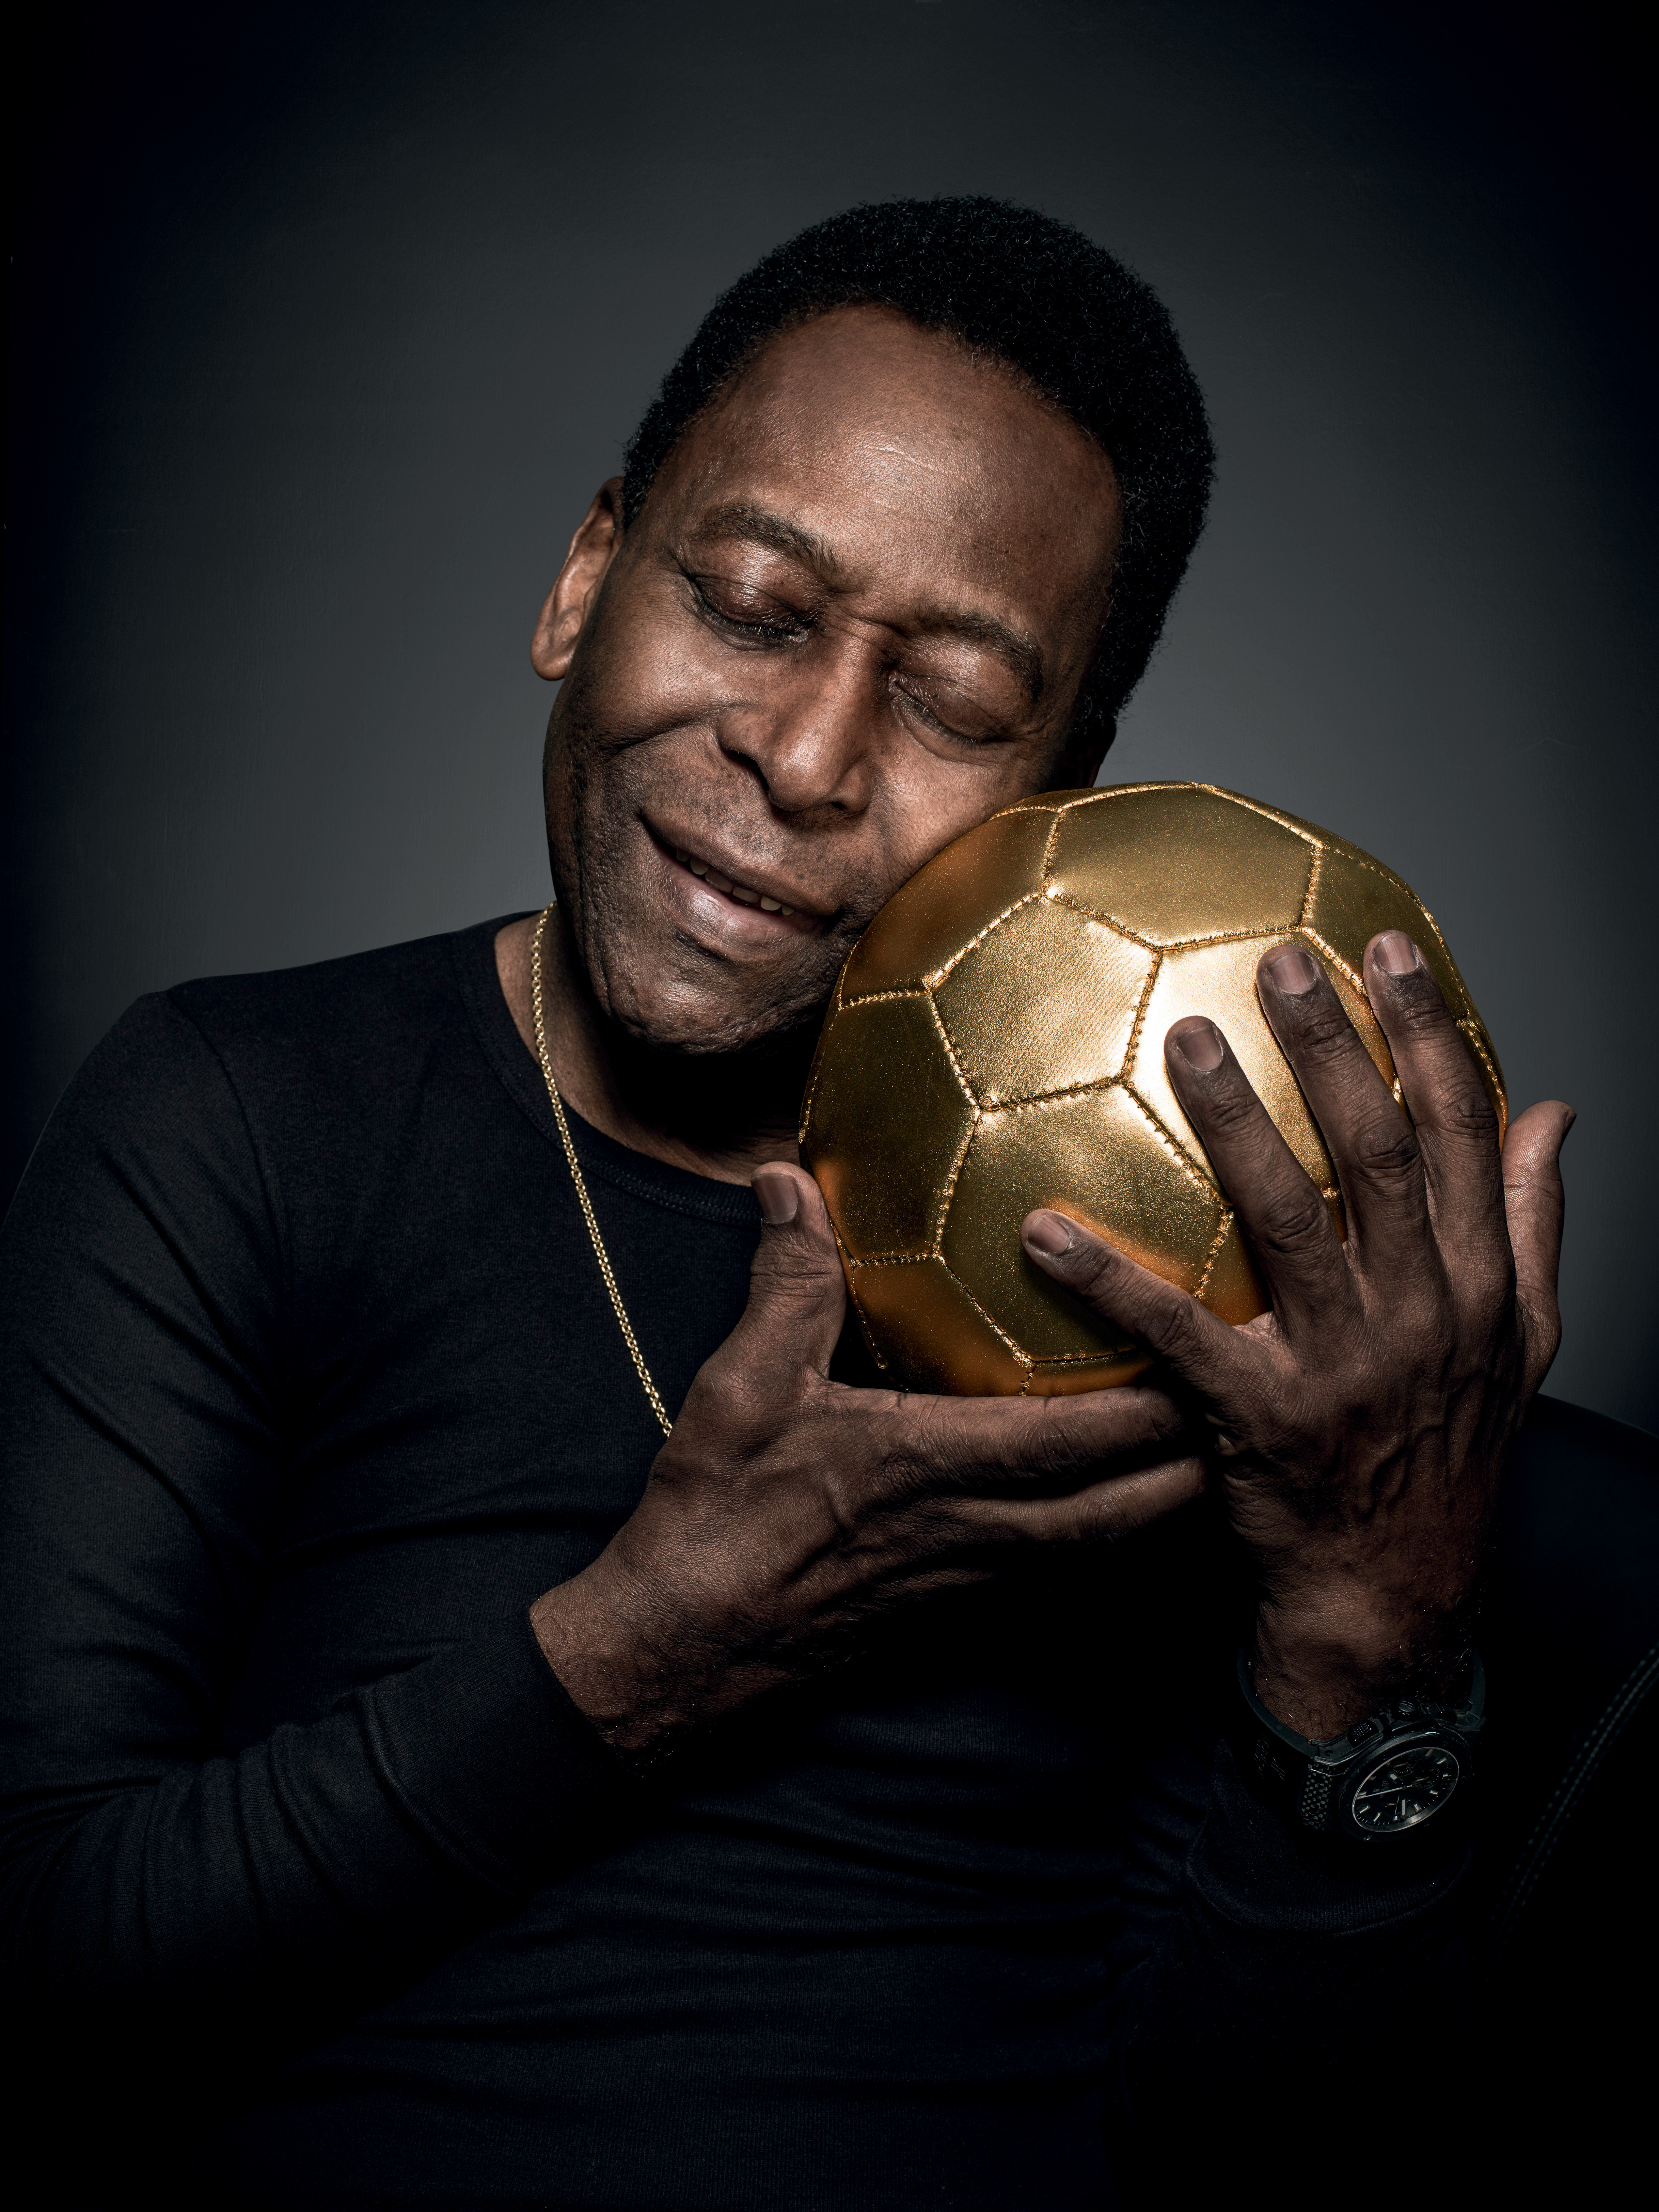 O que fez de Pelé, sem dúvida, o melhor jogador de futebol de todos os  tempos? - Quora